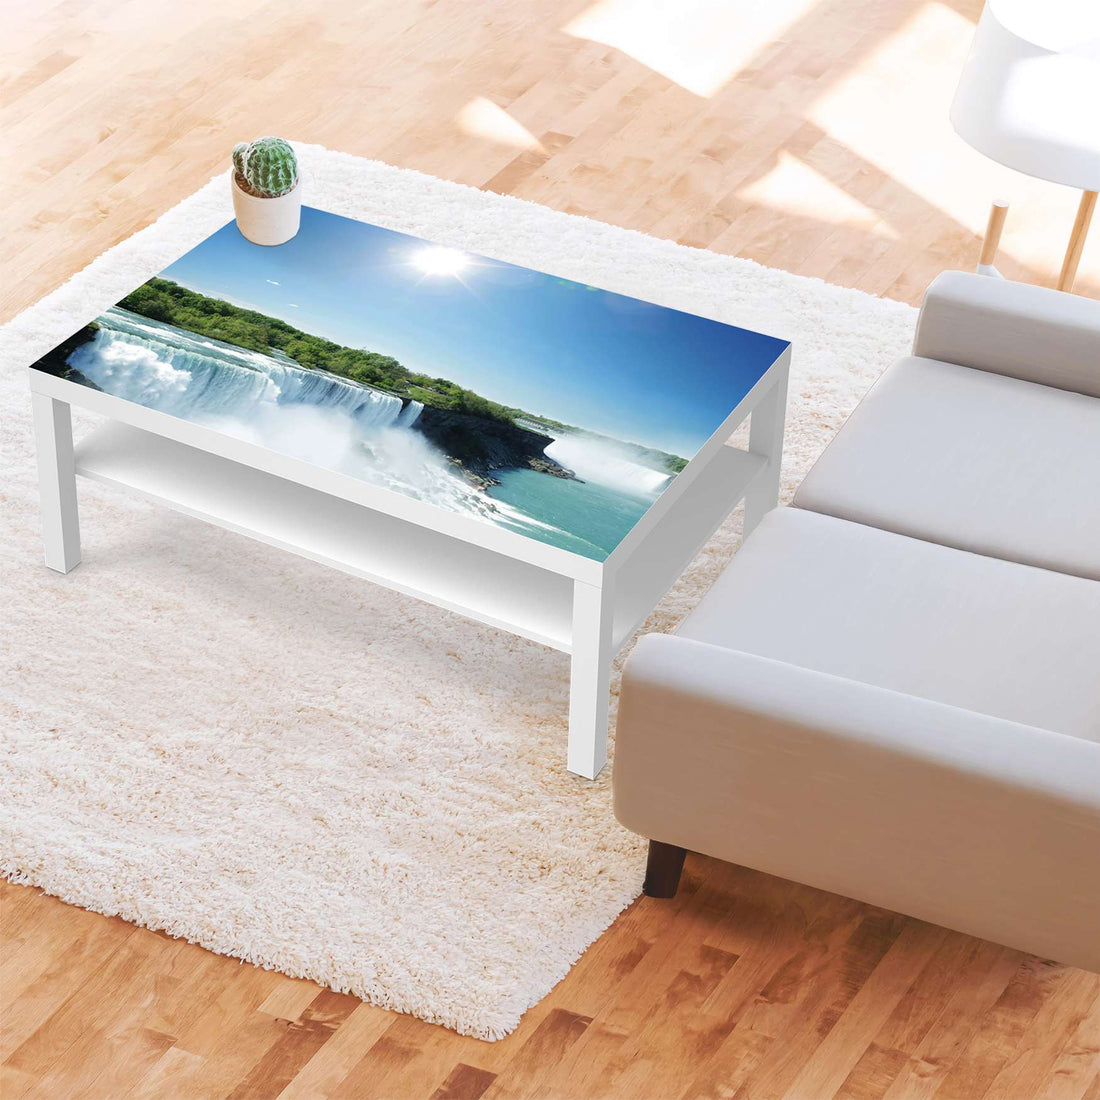 Klebefolie Niagara Falls - IKEA Lack Tisch 118x78 cm - Wohnzimmer